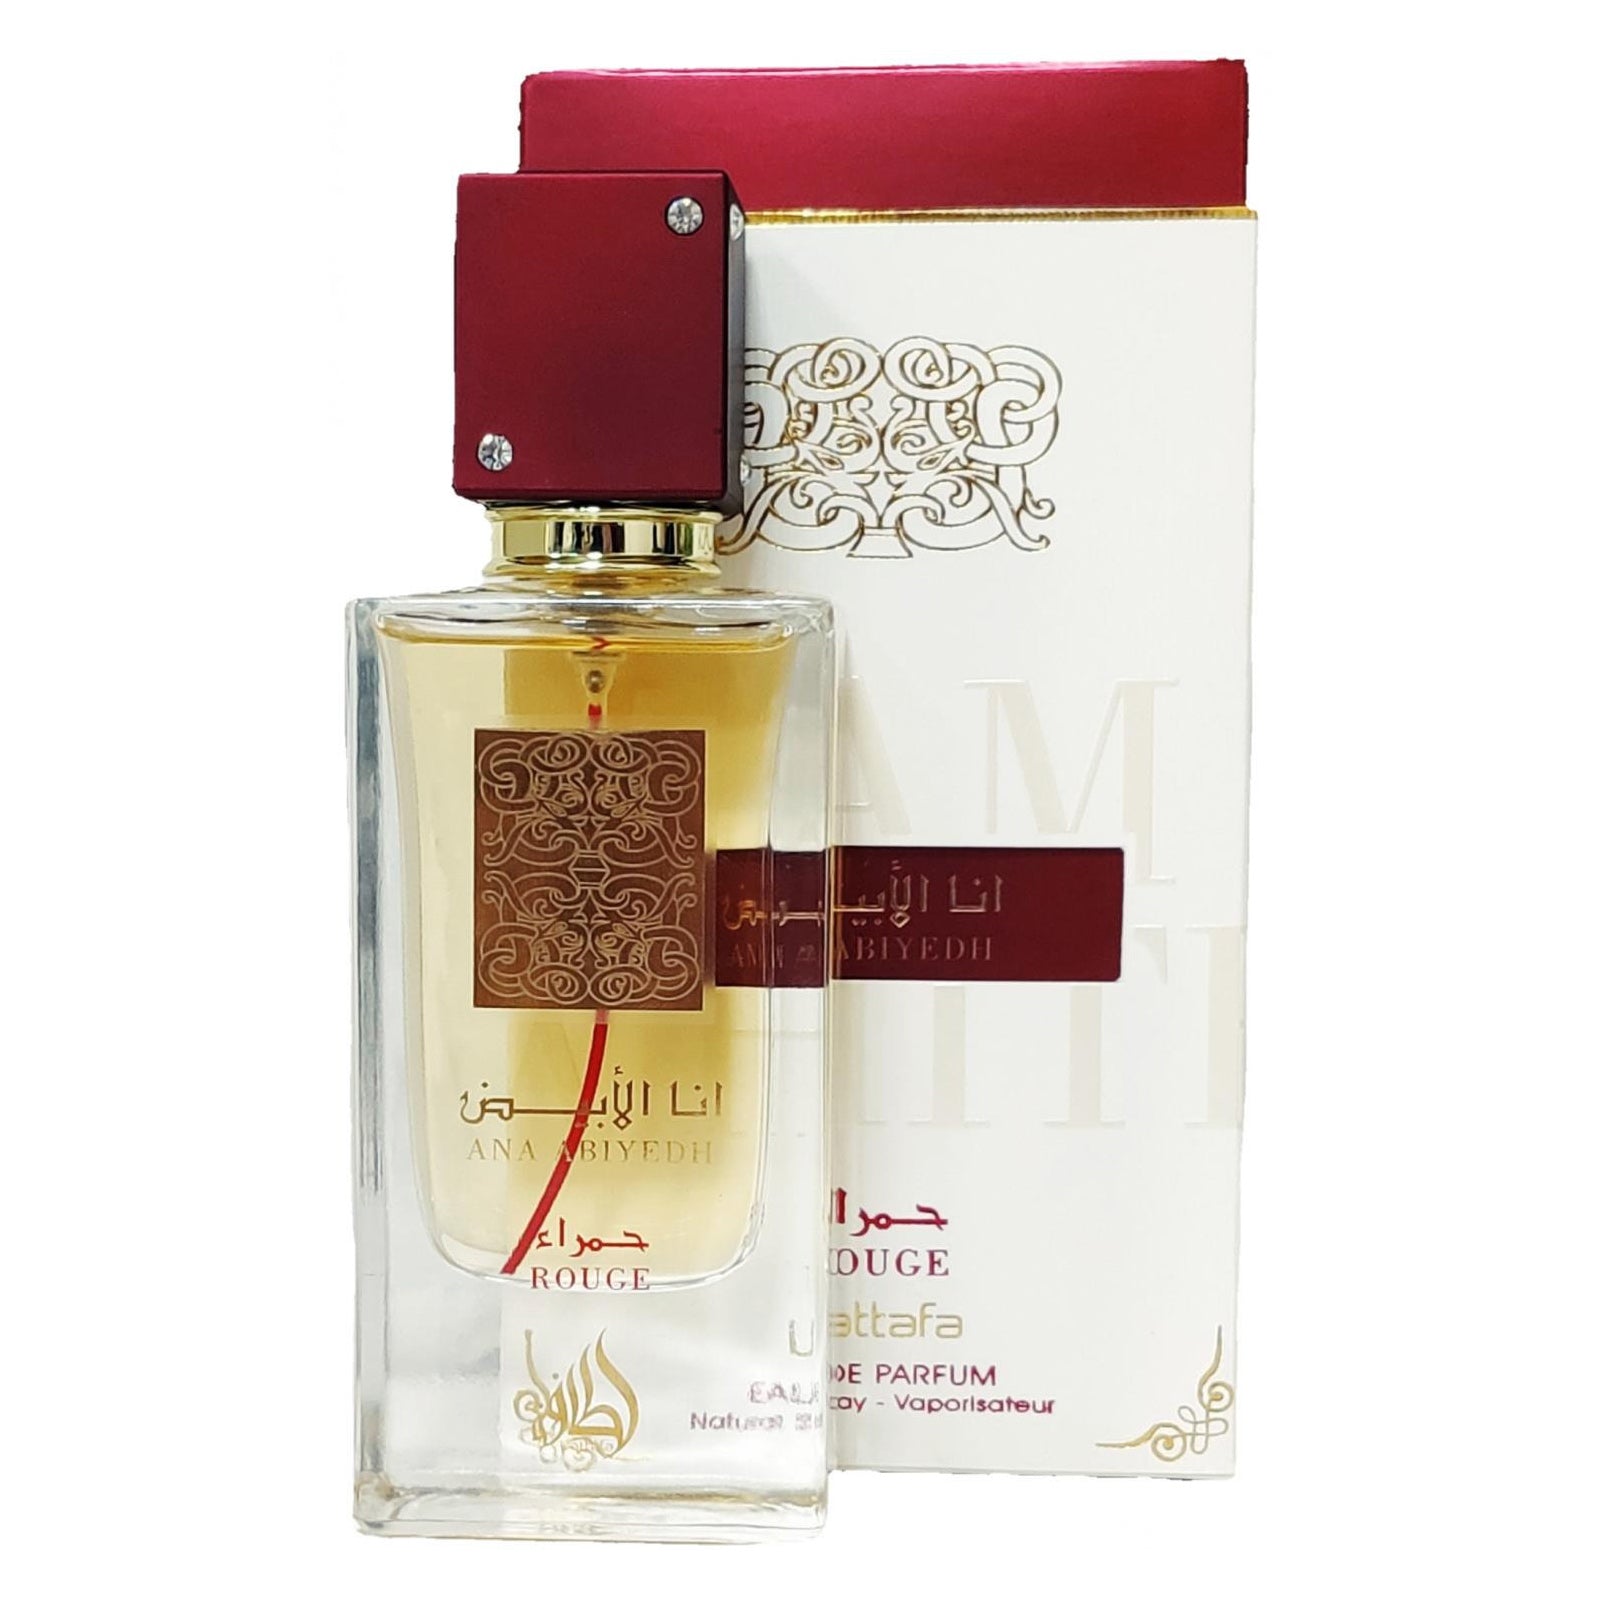 Lattafa Ana Abiyedh Rouge Perfume For Men and Women, EDP, 60ml